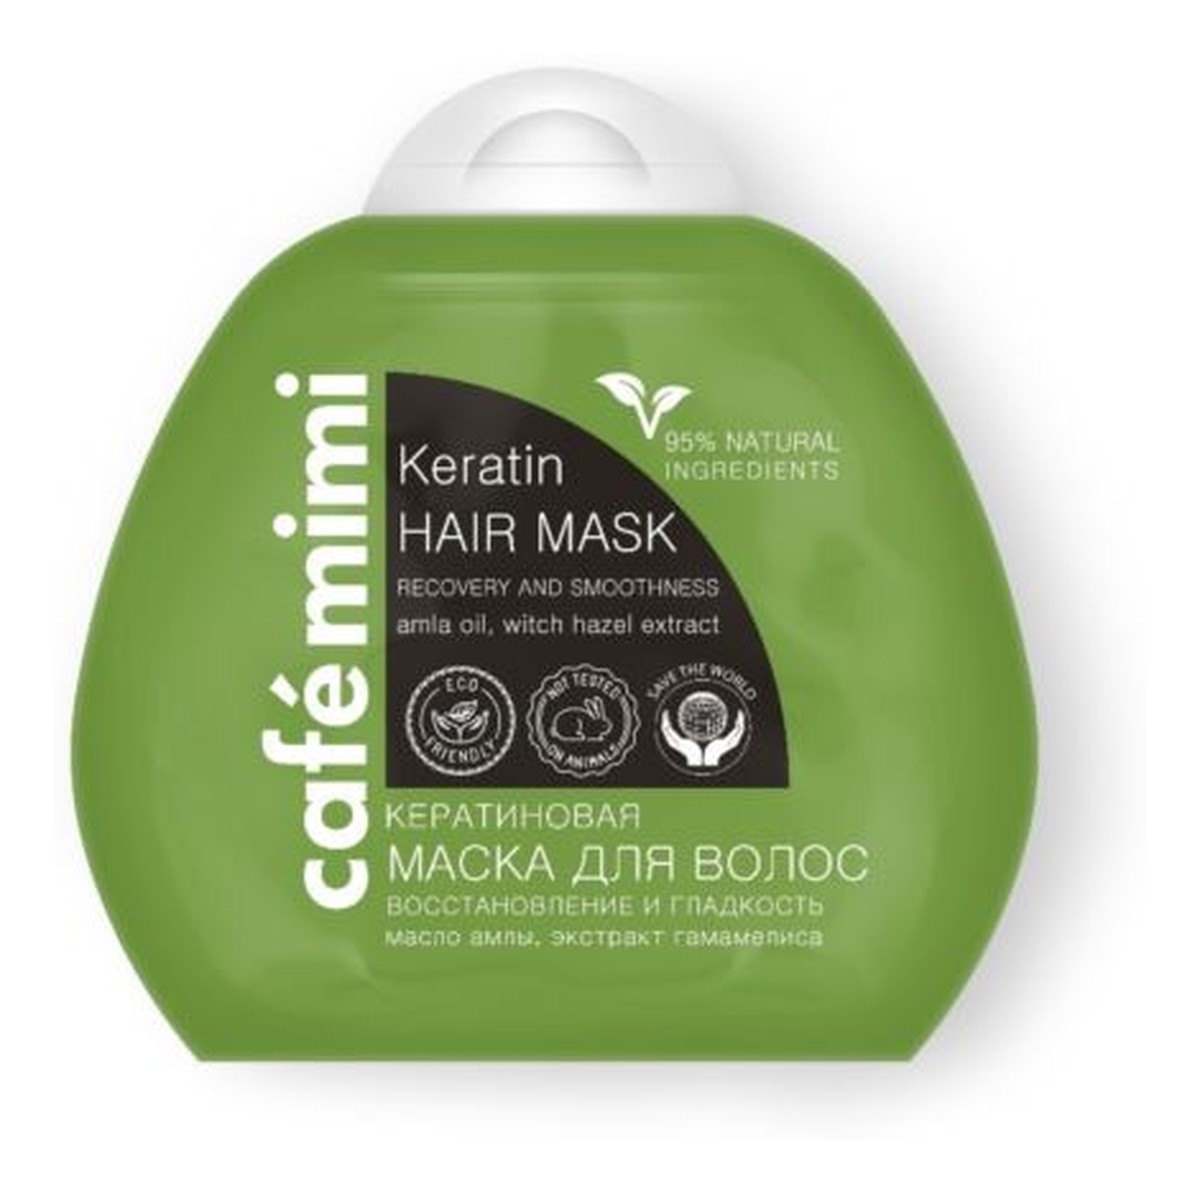 Keratynowa maska do włosów - odbudowa i gładkość - keratyna, olej amli indyjskiej, ekstrakt oczaru wirginijskiego, - 95% składników naturalnych